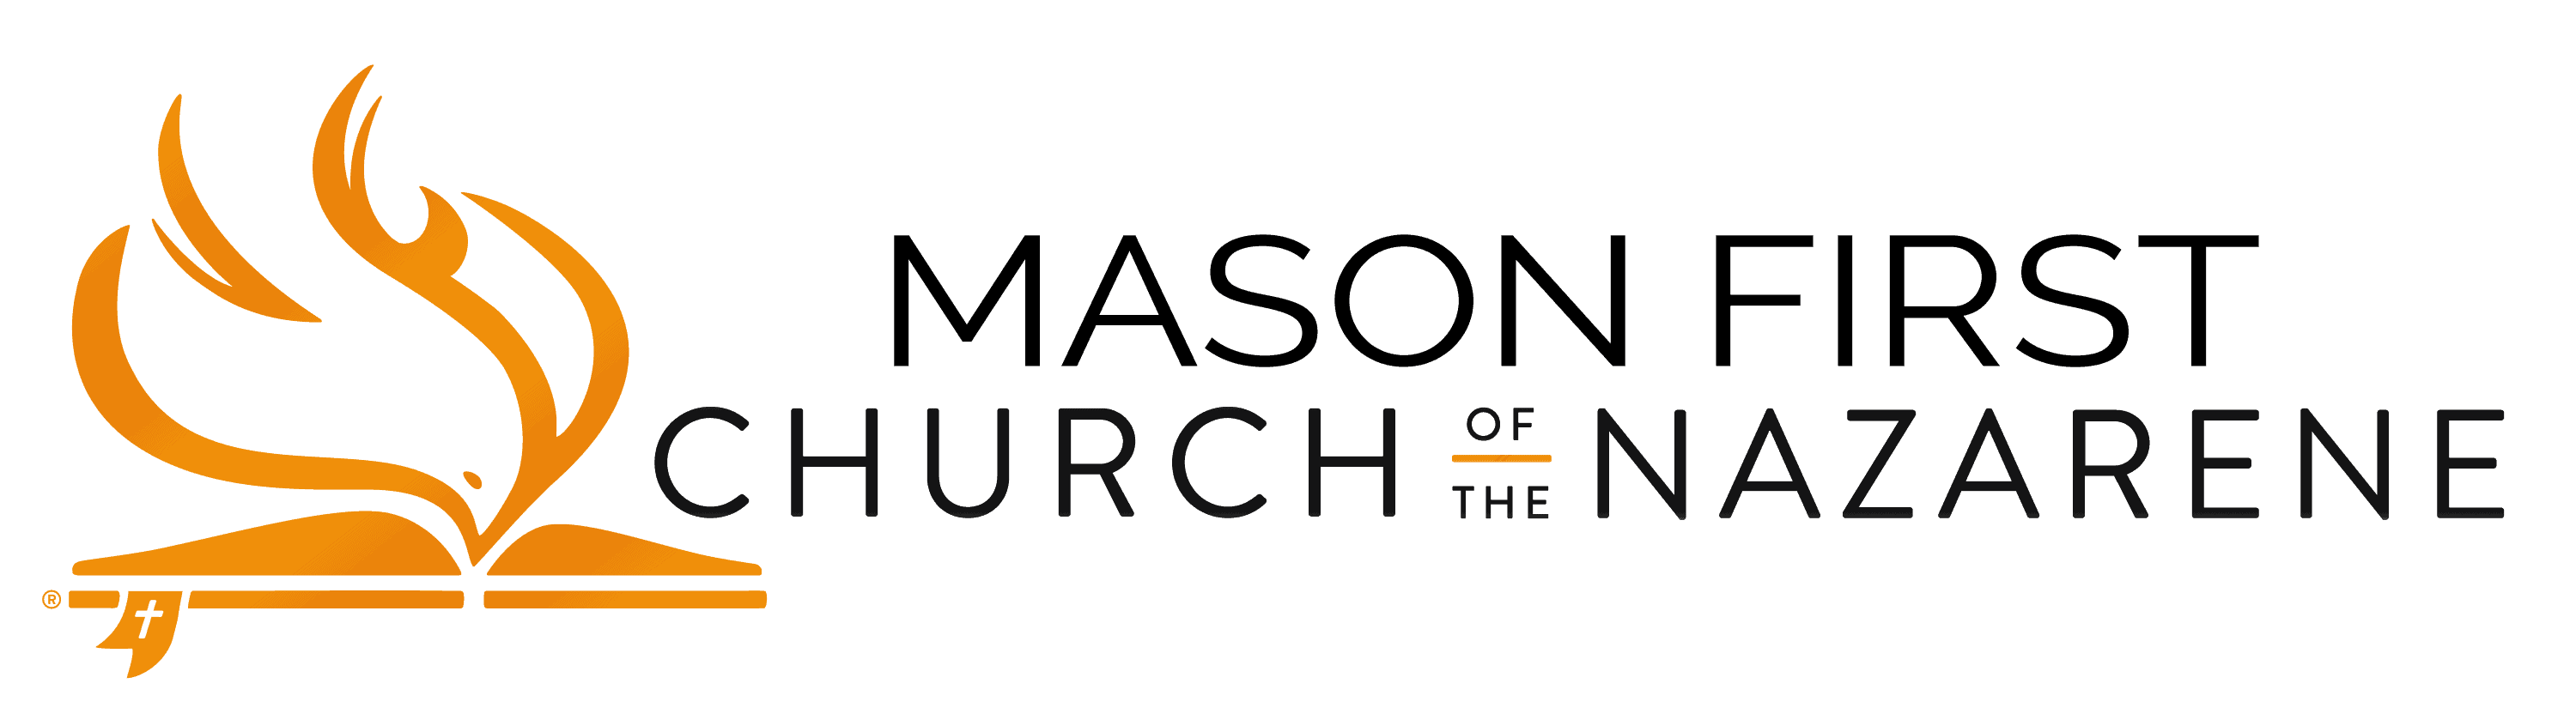 Mason First Church of the Nazarene